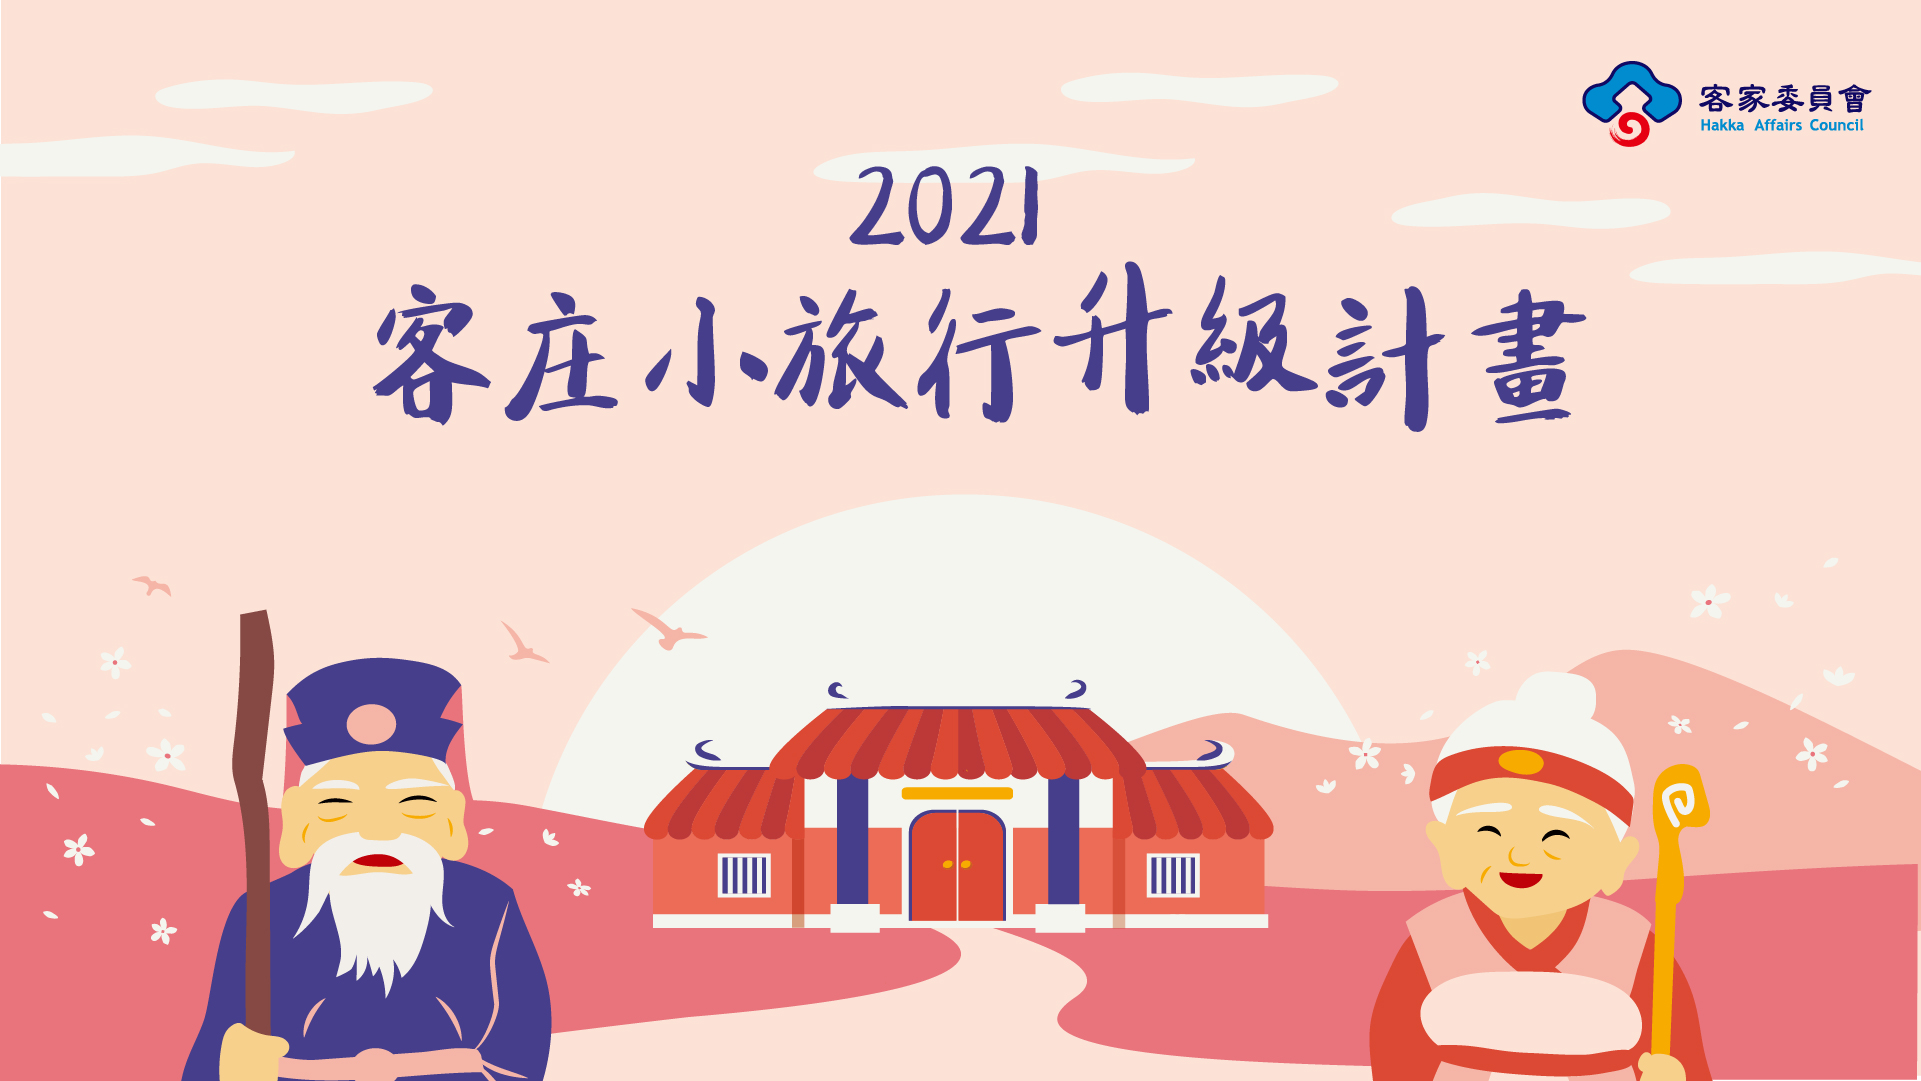 2021客庄小旅行升級計畫